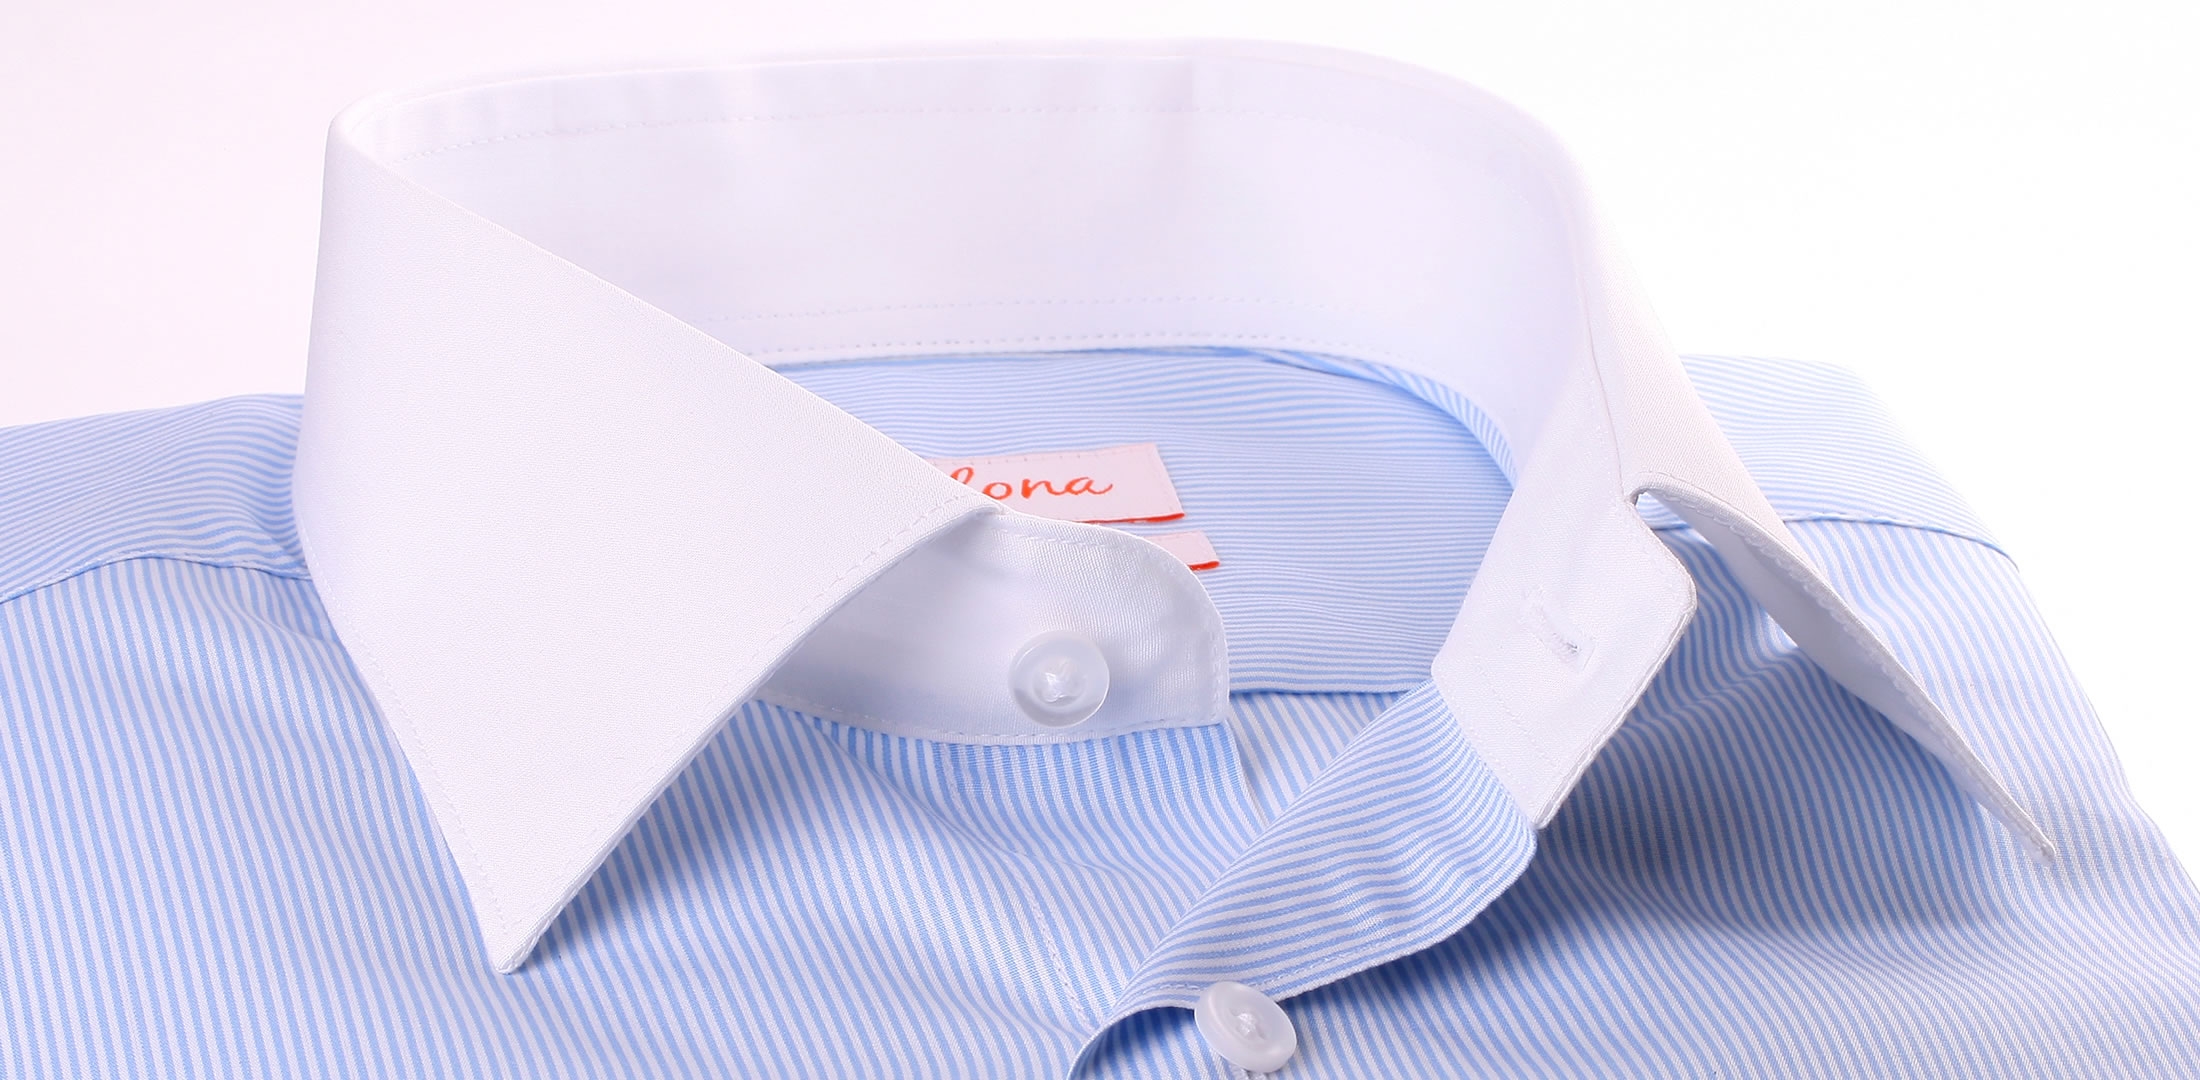 Wit en blauw gestreept shirt met witte kraag en manchetten